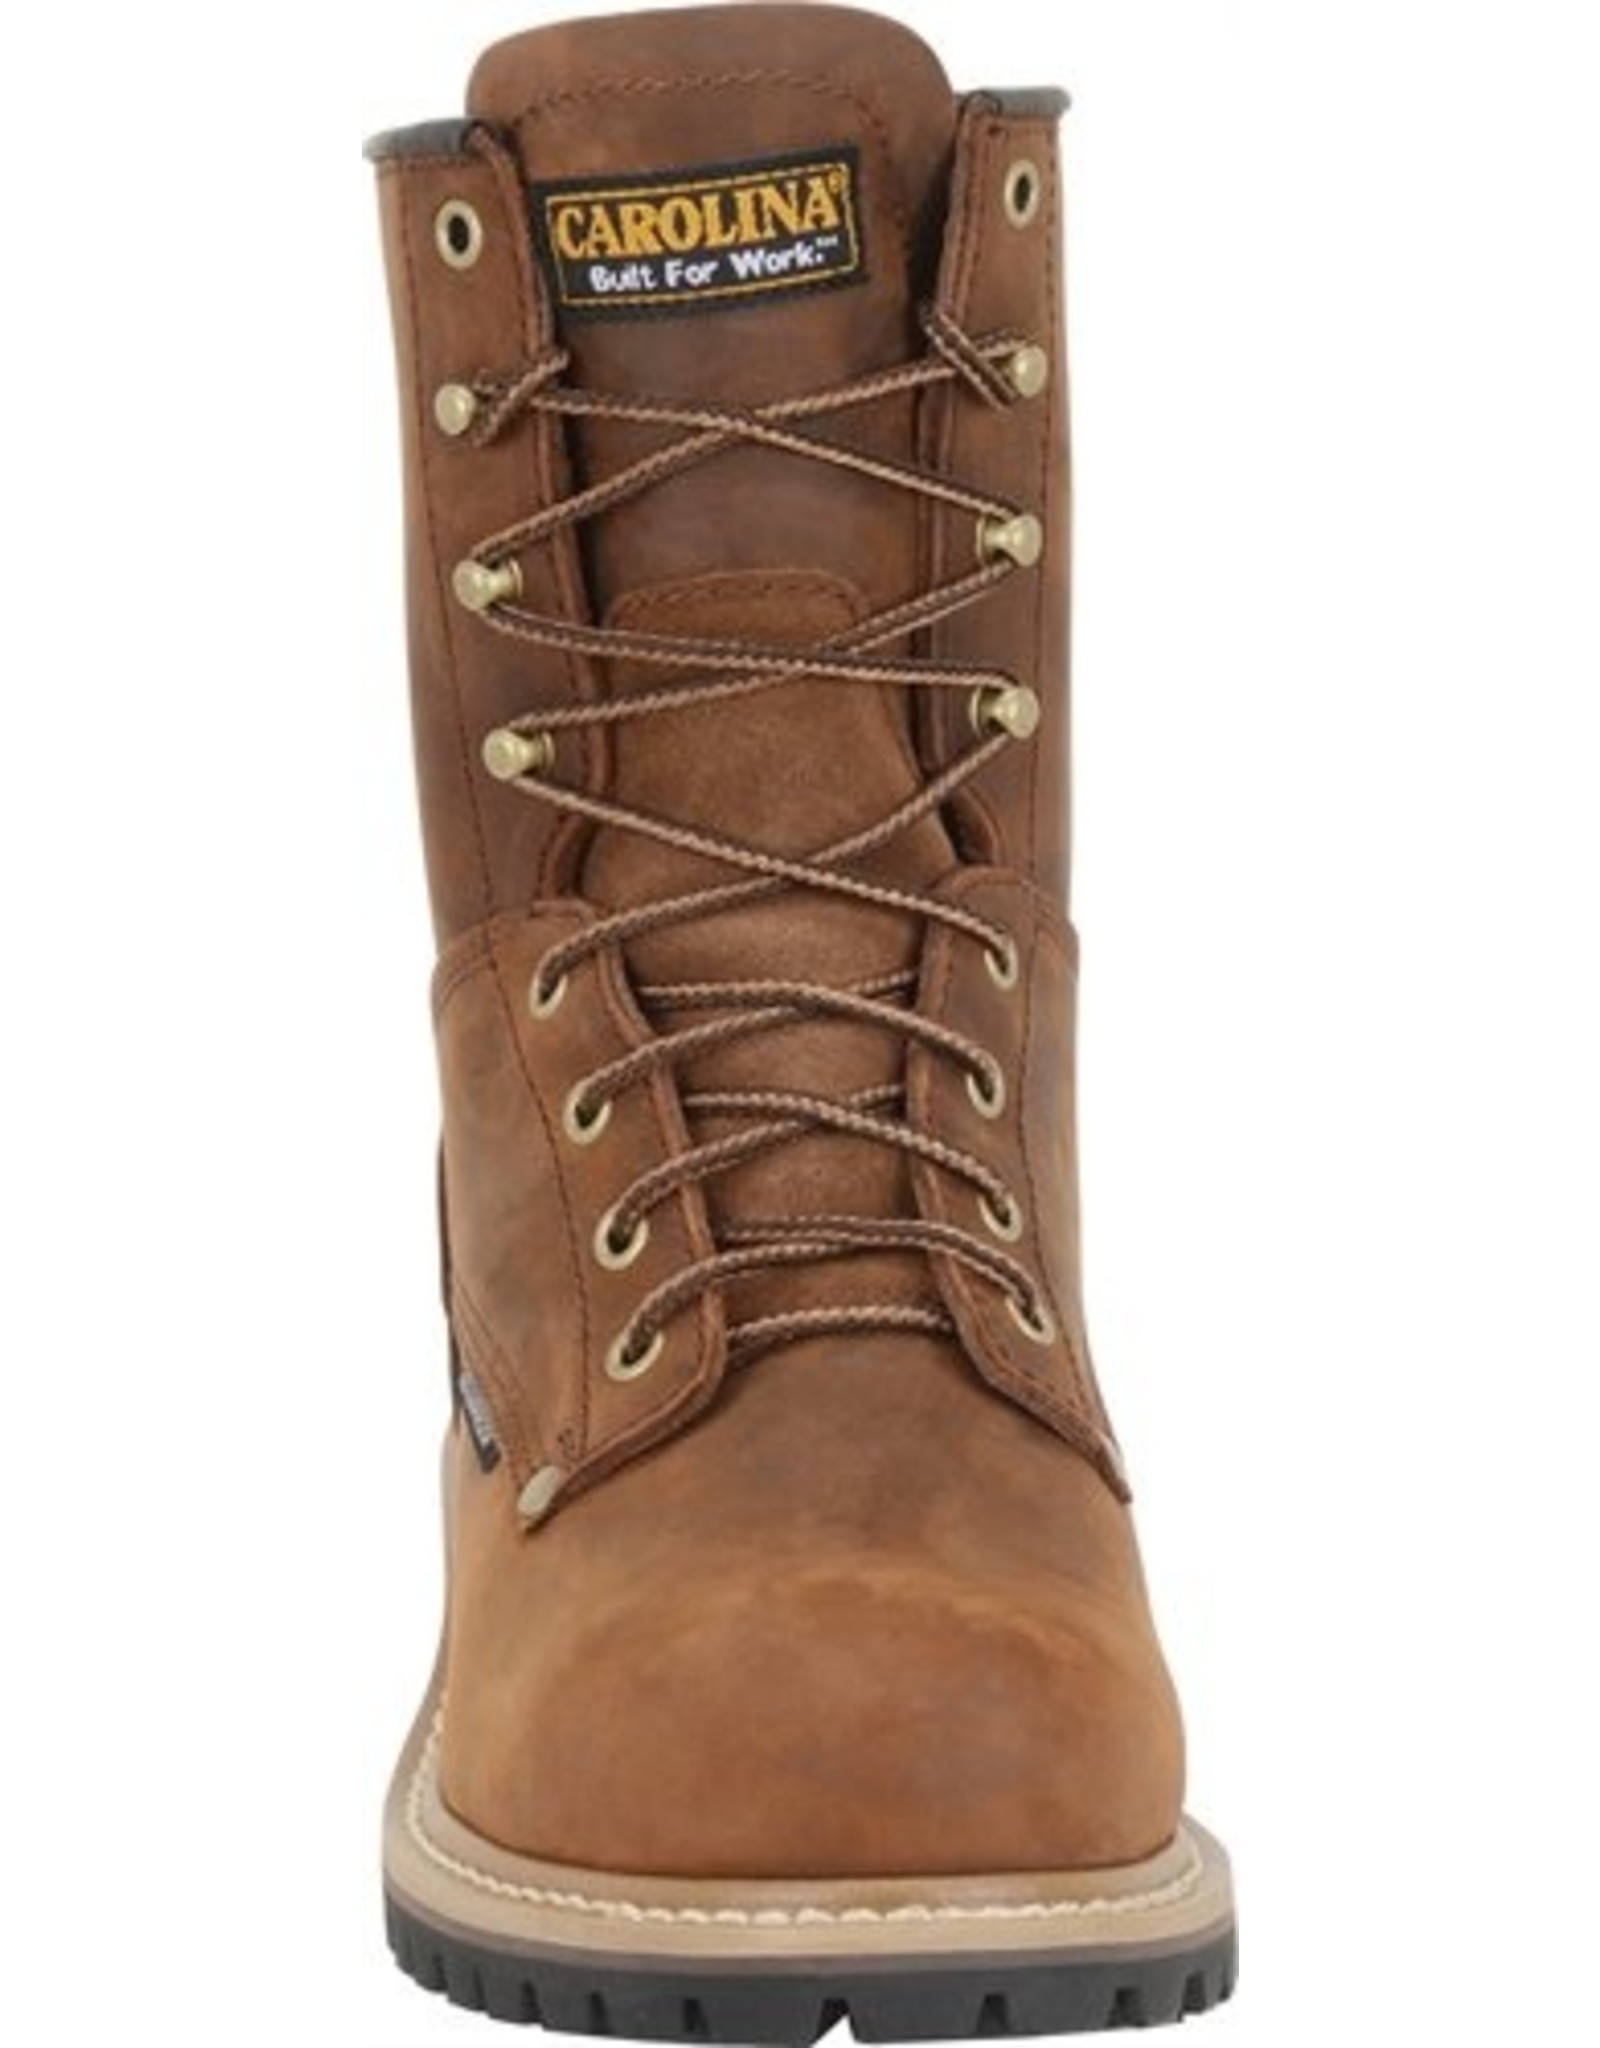 Boots-Men CAROLNA Elm Logger CA8821